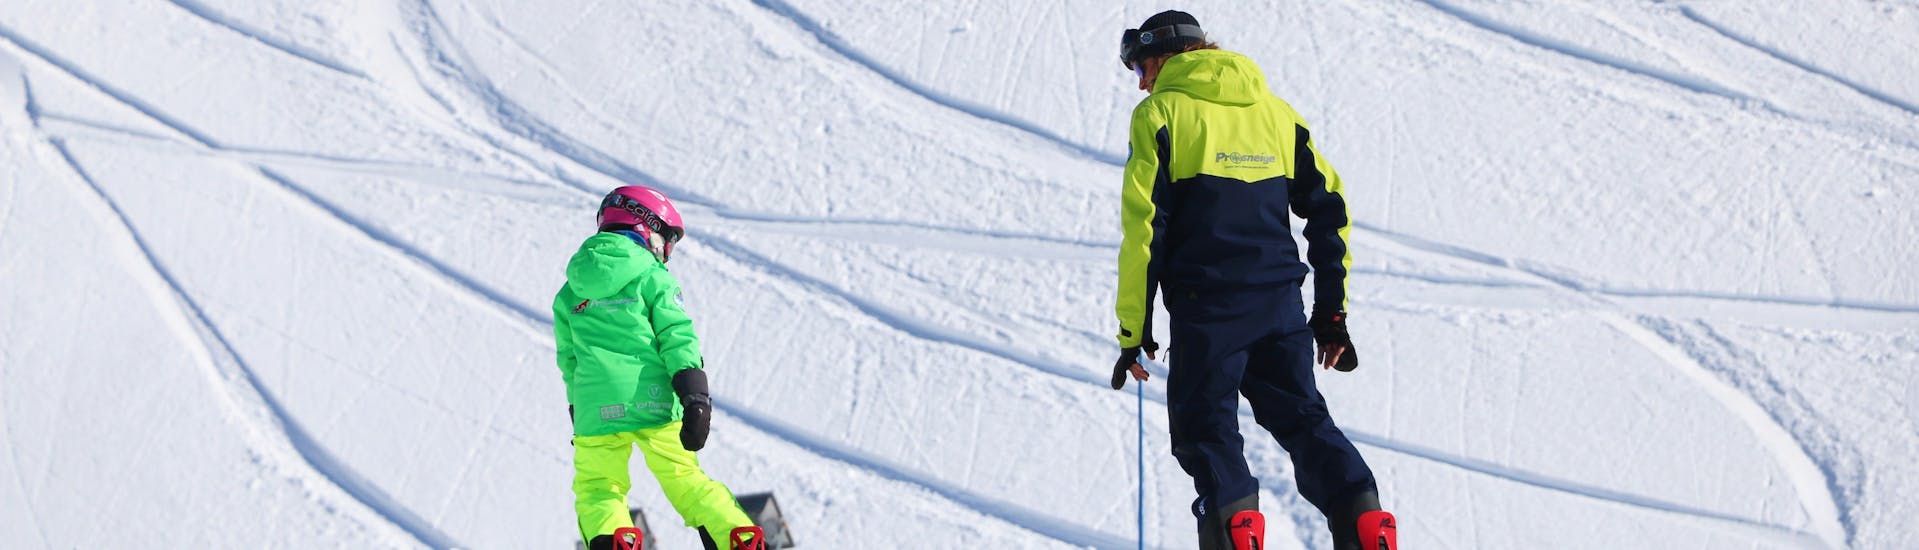 Un enfant apprend le snowboard sous l'œil attentif de son moniteur pendant un Cours particulier de snowboard avec Prosneige Alpe d'Huez.